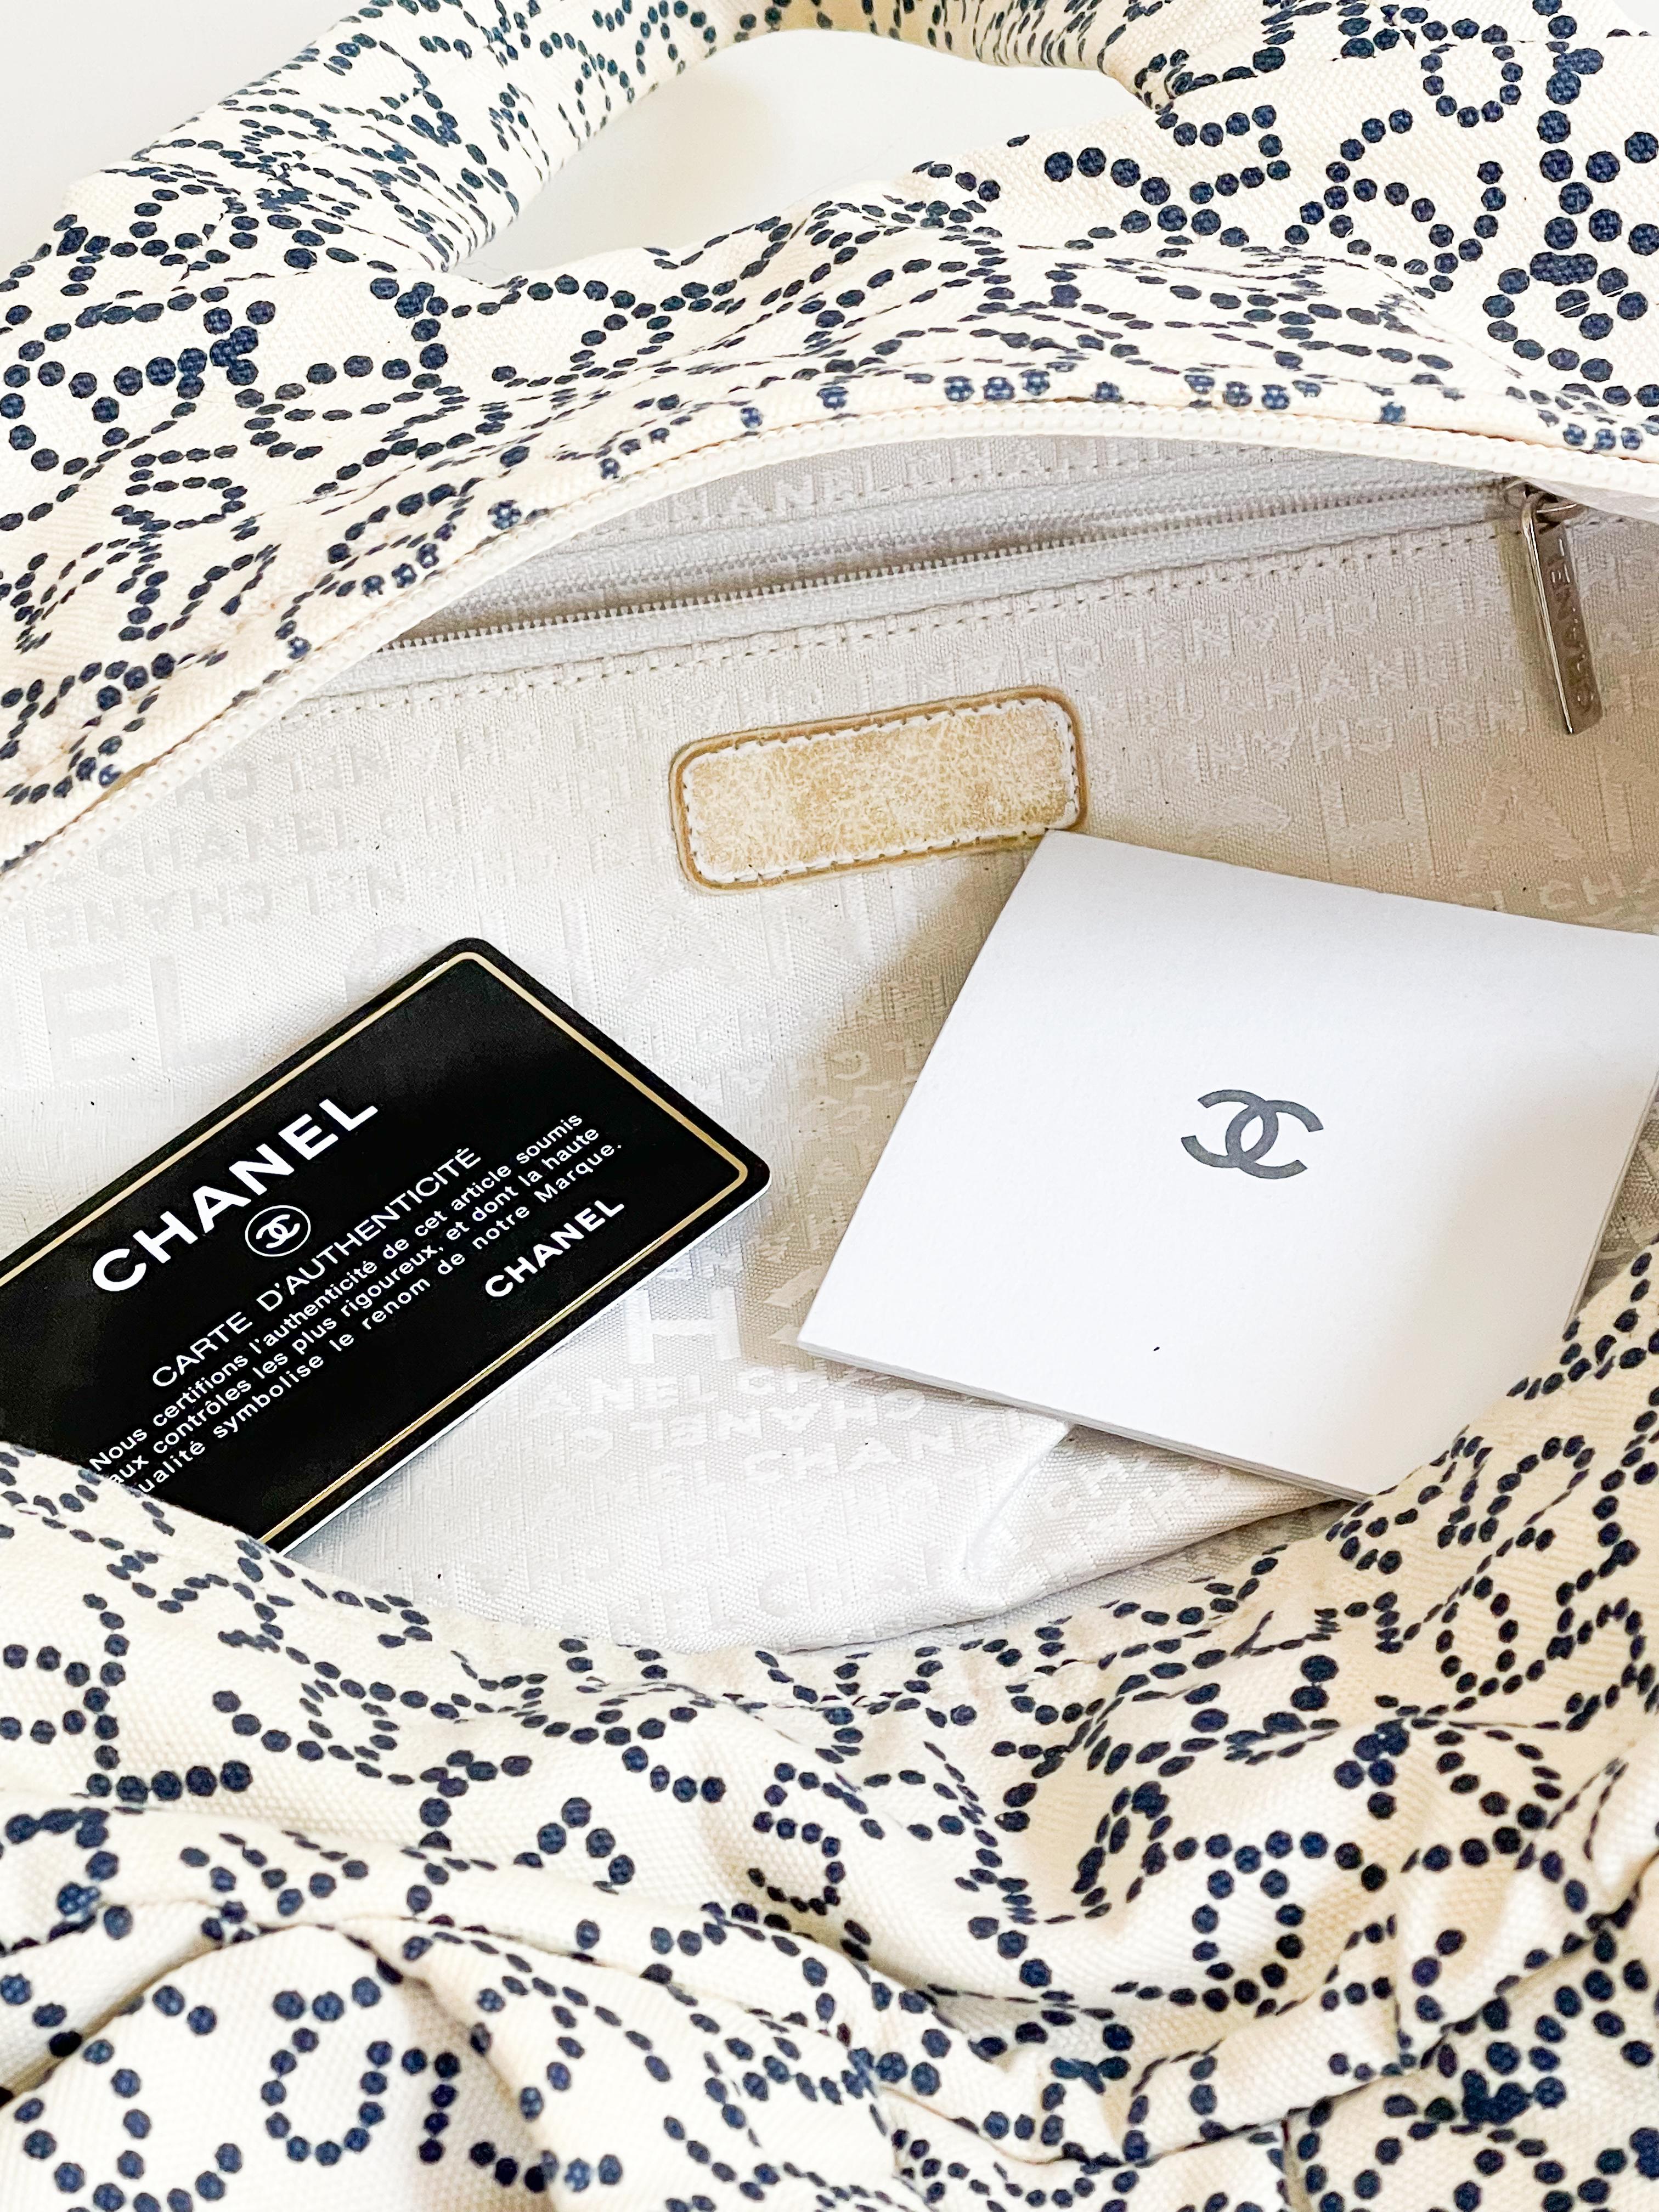 Gray Chanel toile printed hand bag